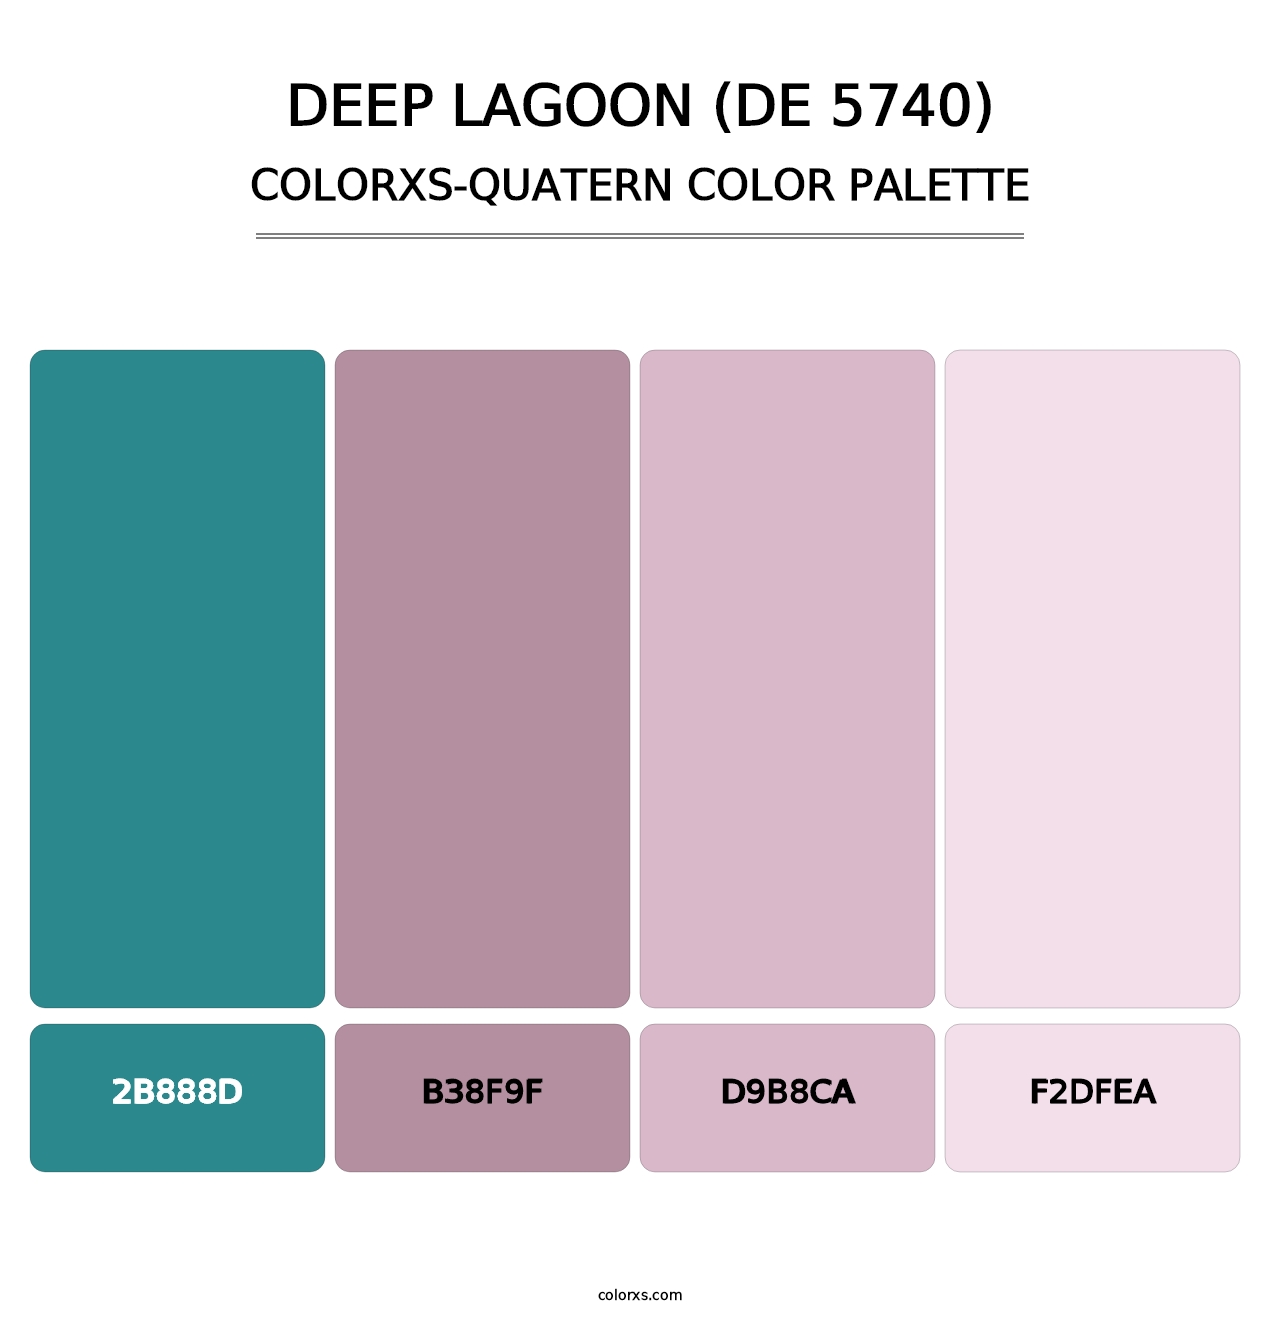 Deep Lagoon (DE 5740) - Colorxs Quatern Palette